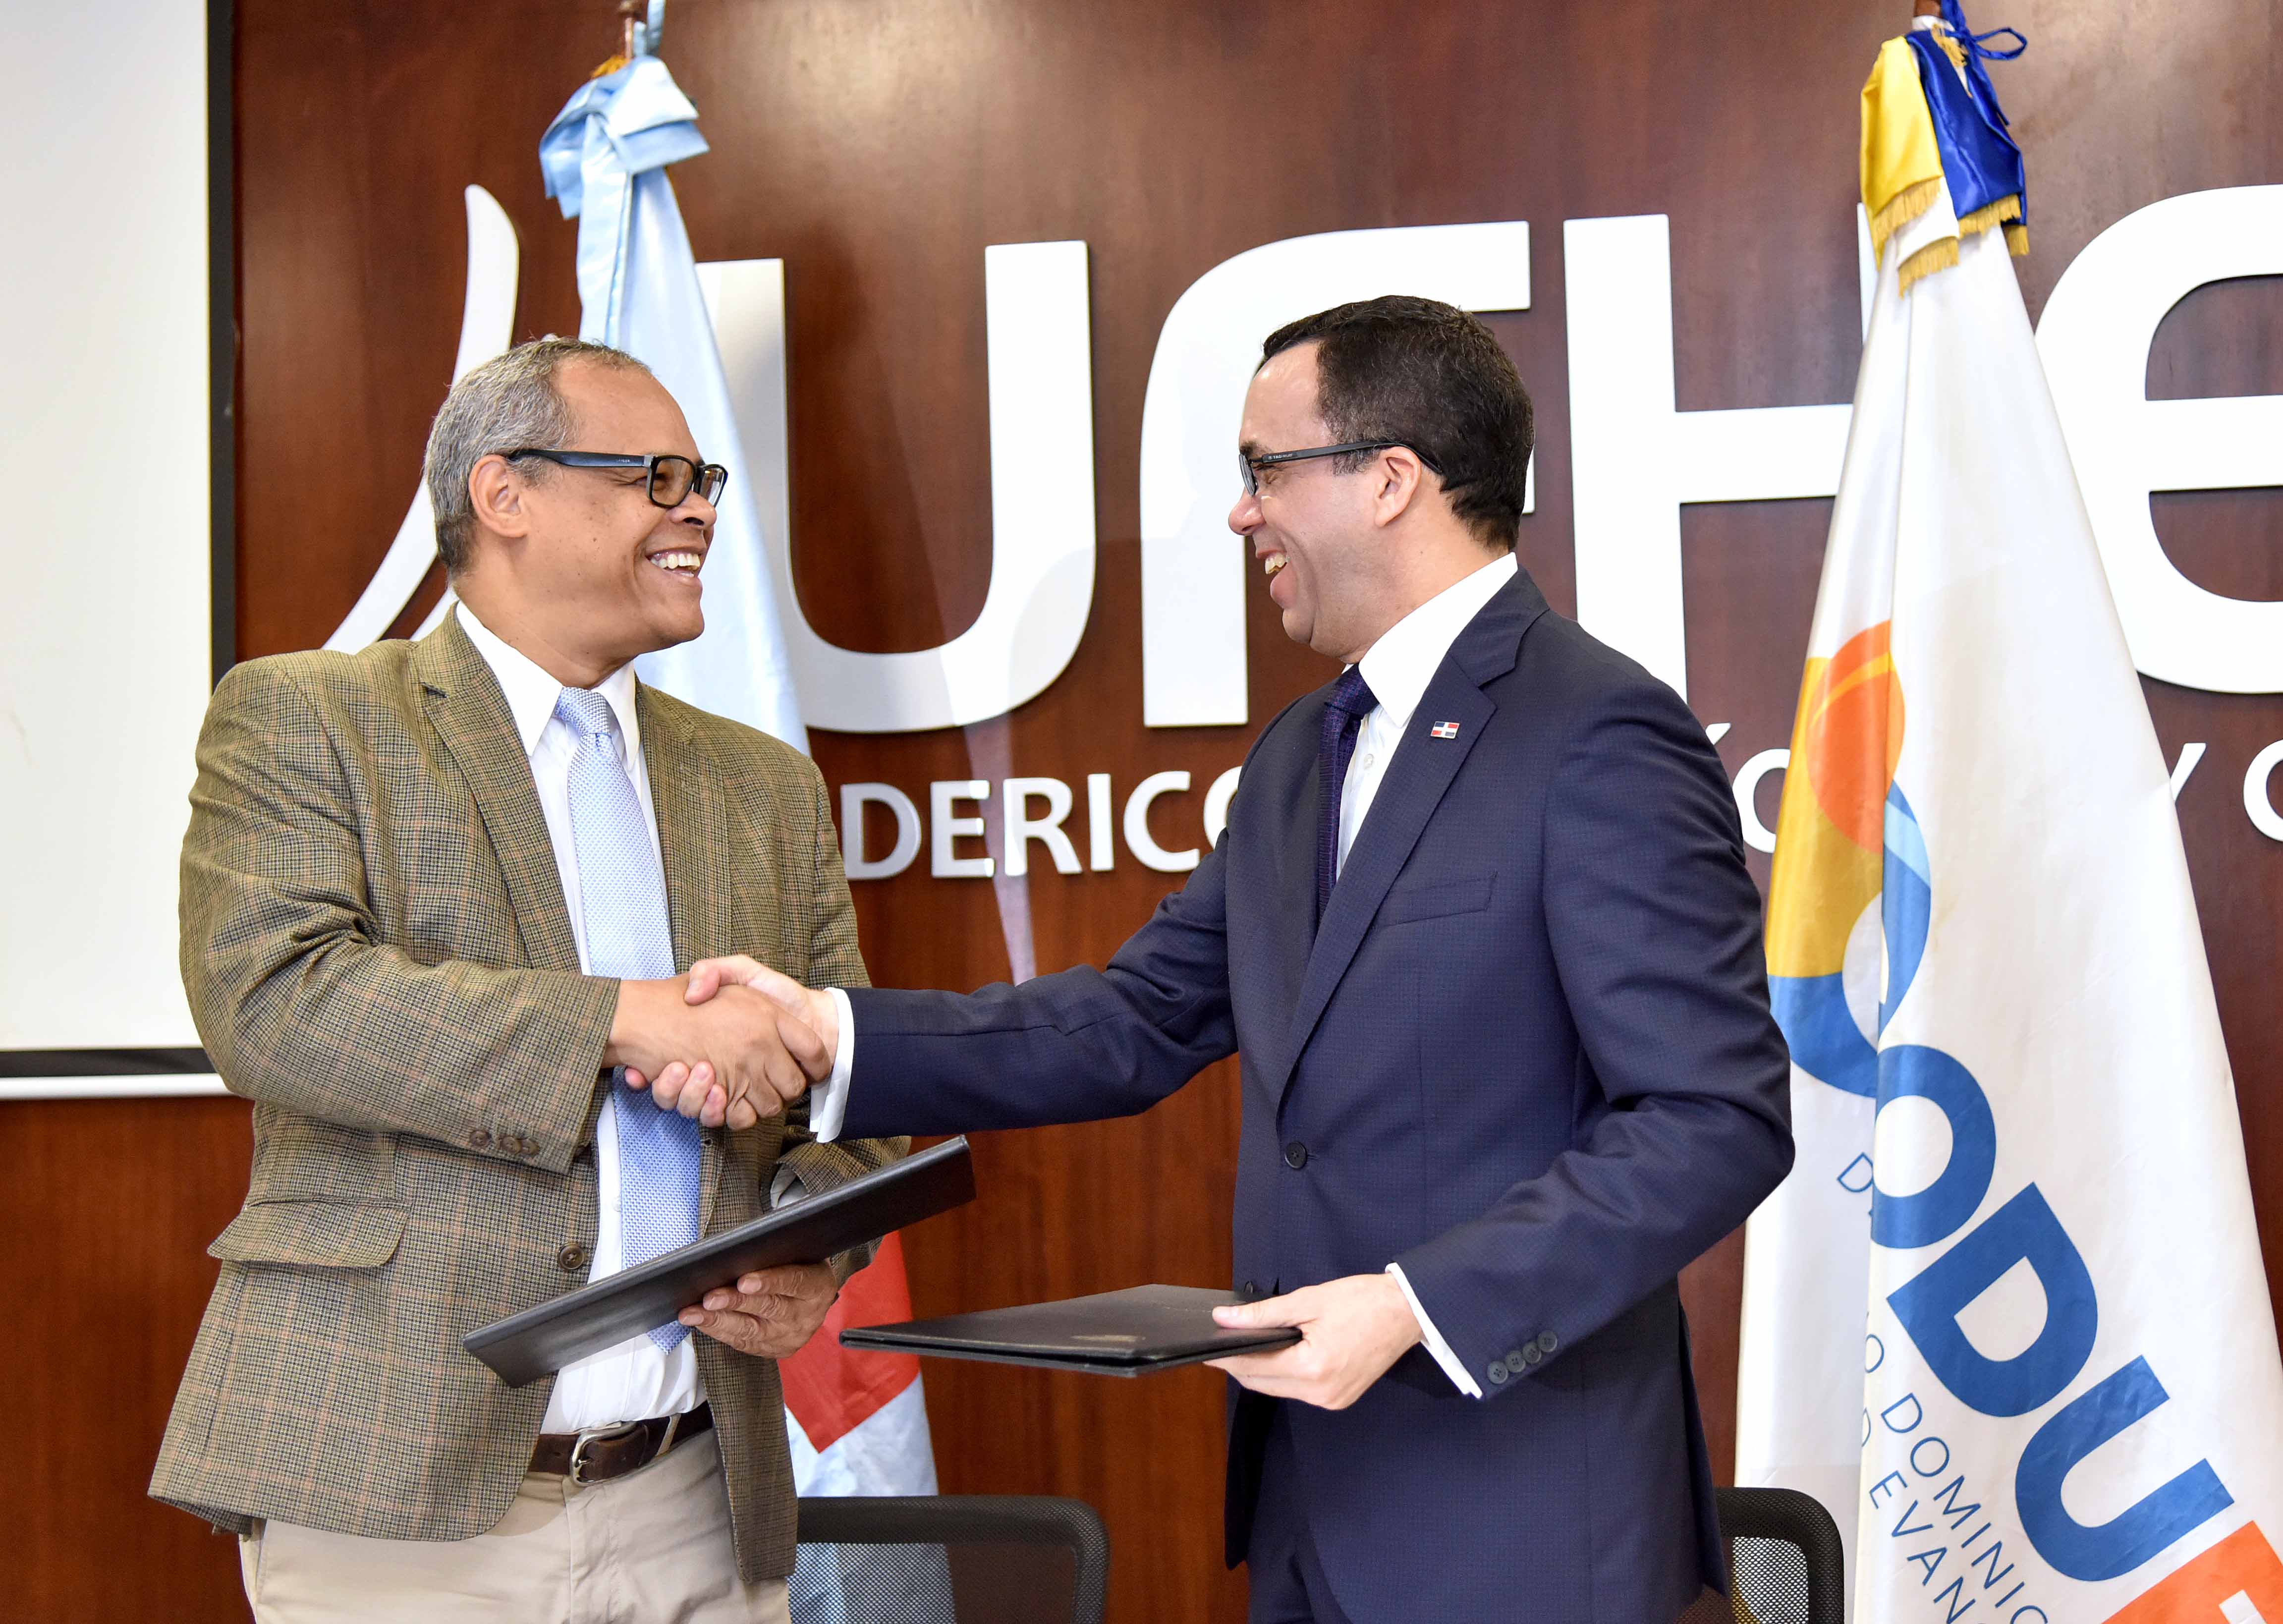  imagen Ministro Andés Navarro de pie junto a presidente del CODUE  estrechandose las manos luego de firma de convenio  